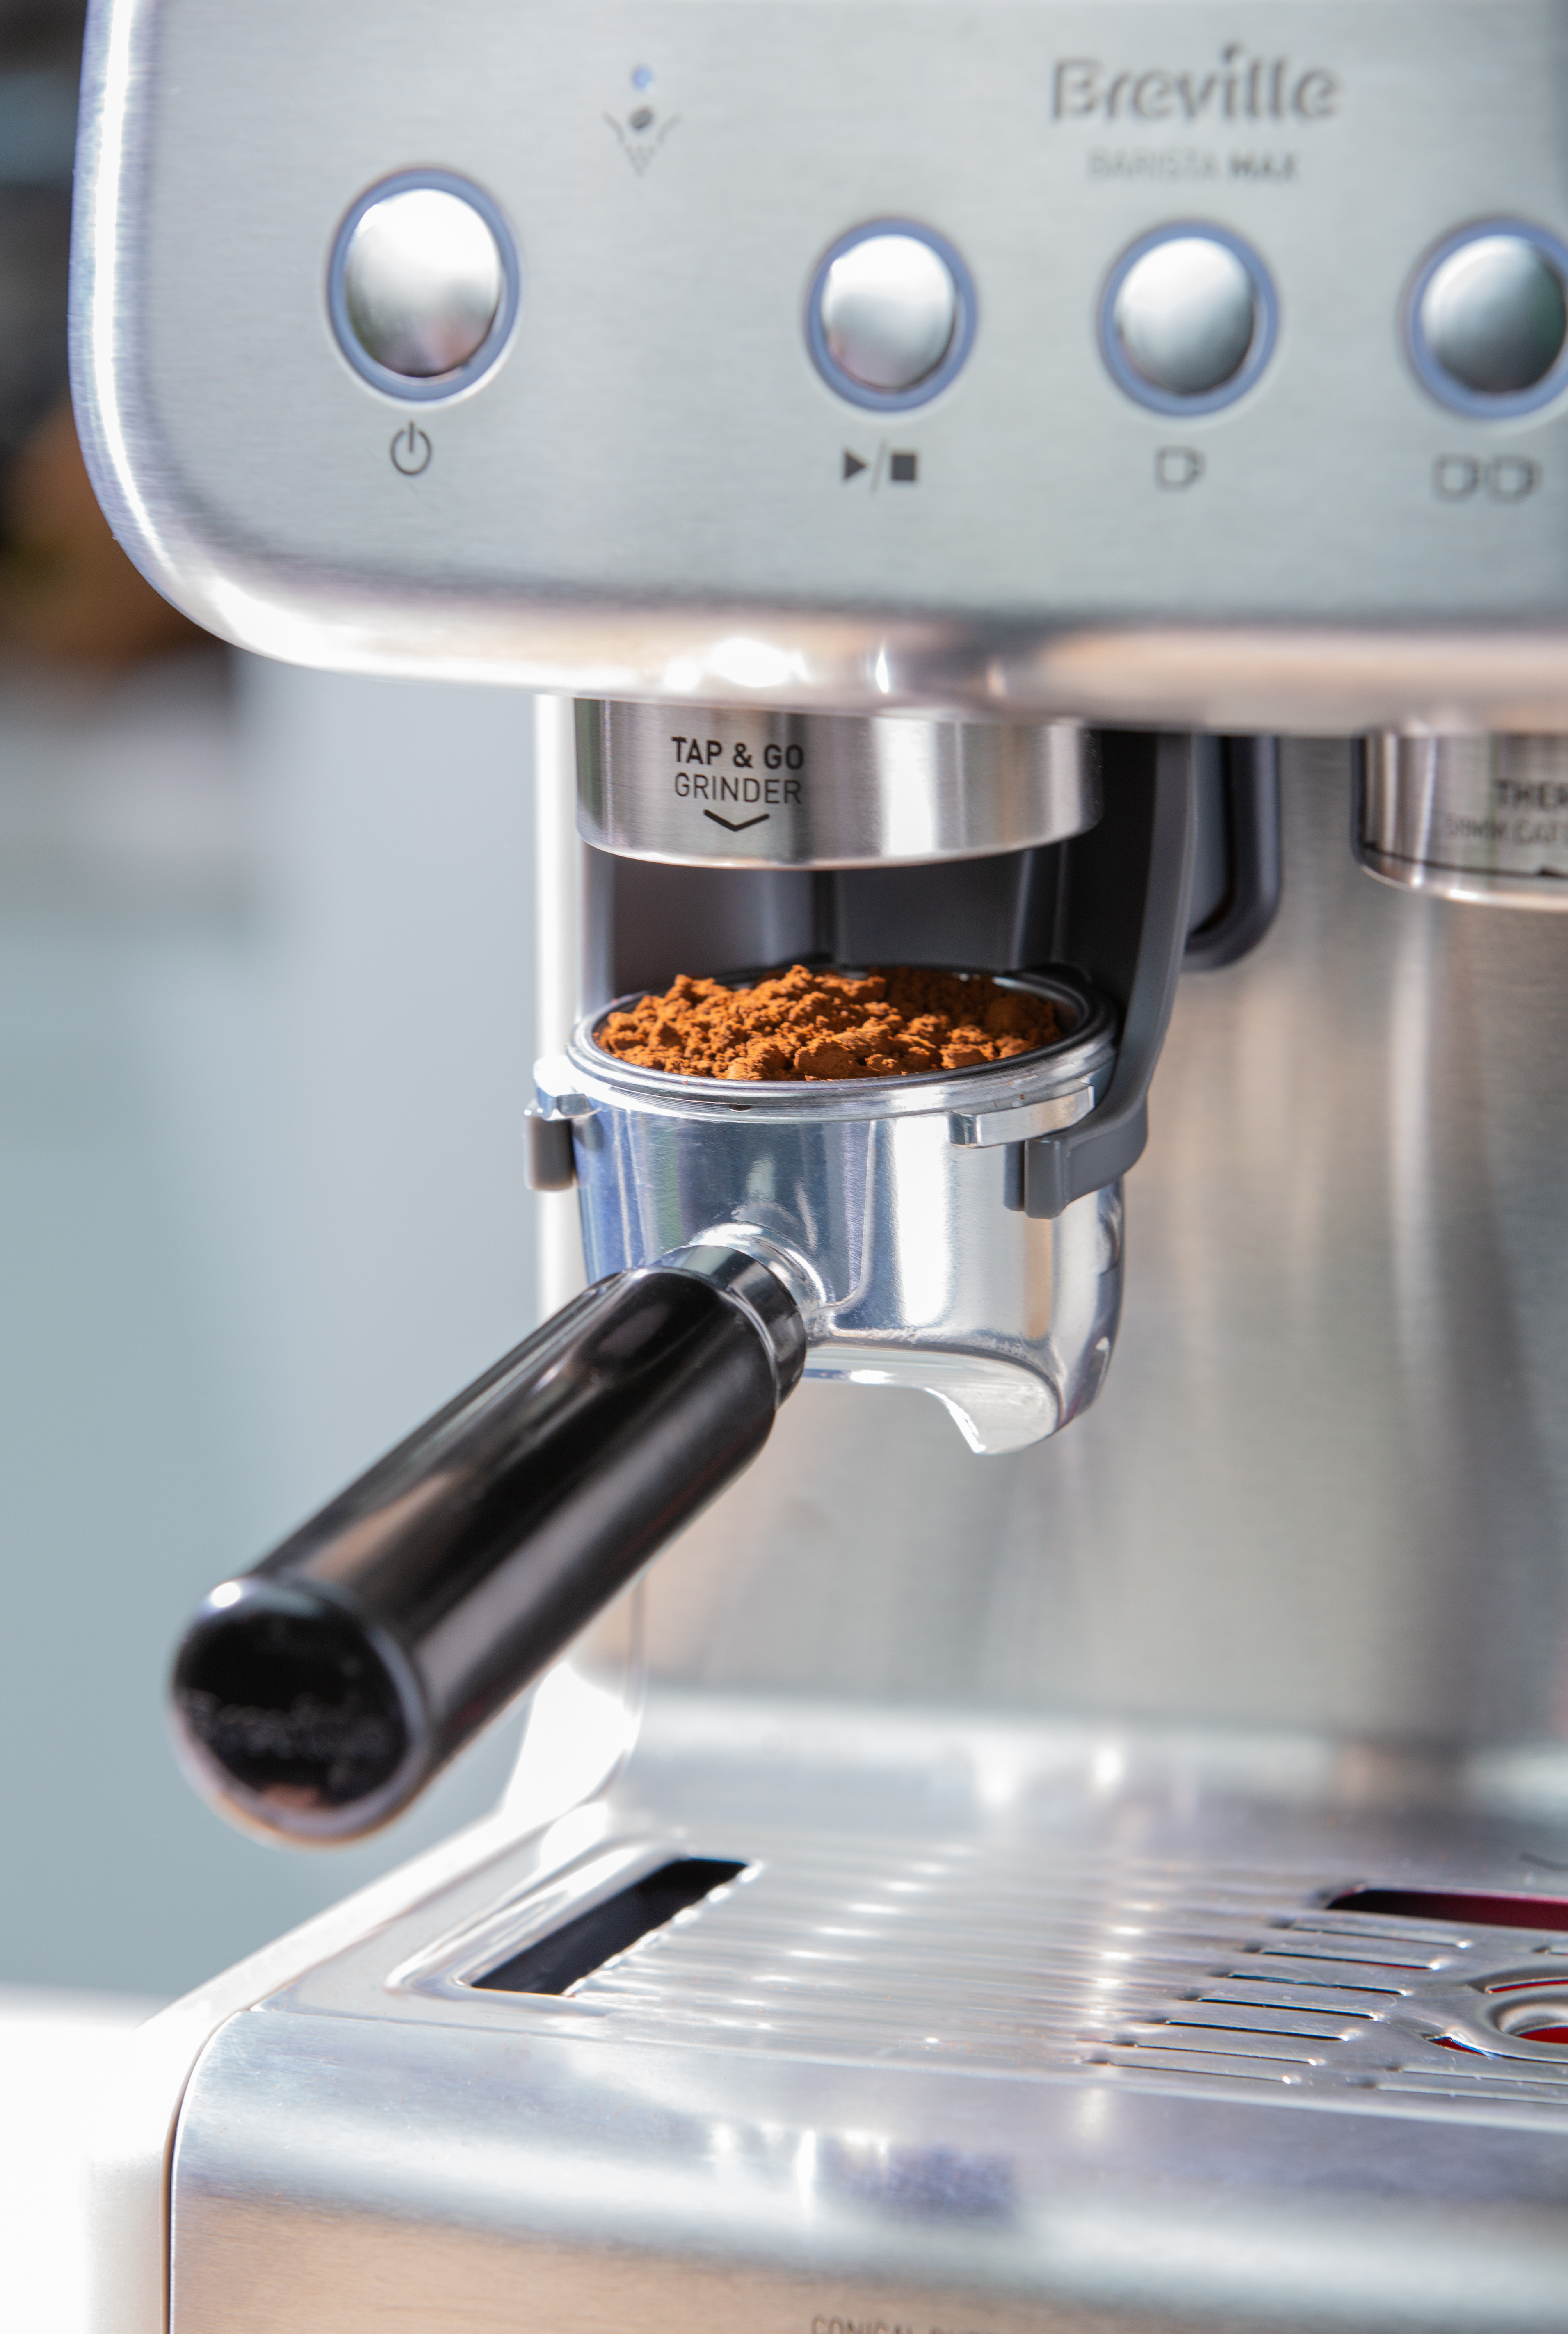 Se desploma el precio de esta cafetera Breville con molinillo integrado:  espressos deliciosos para sentirte todo un barista